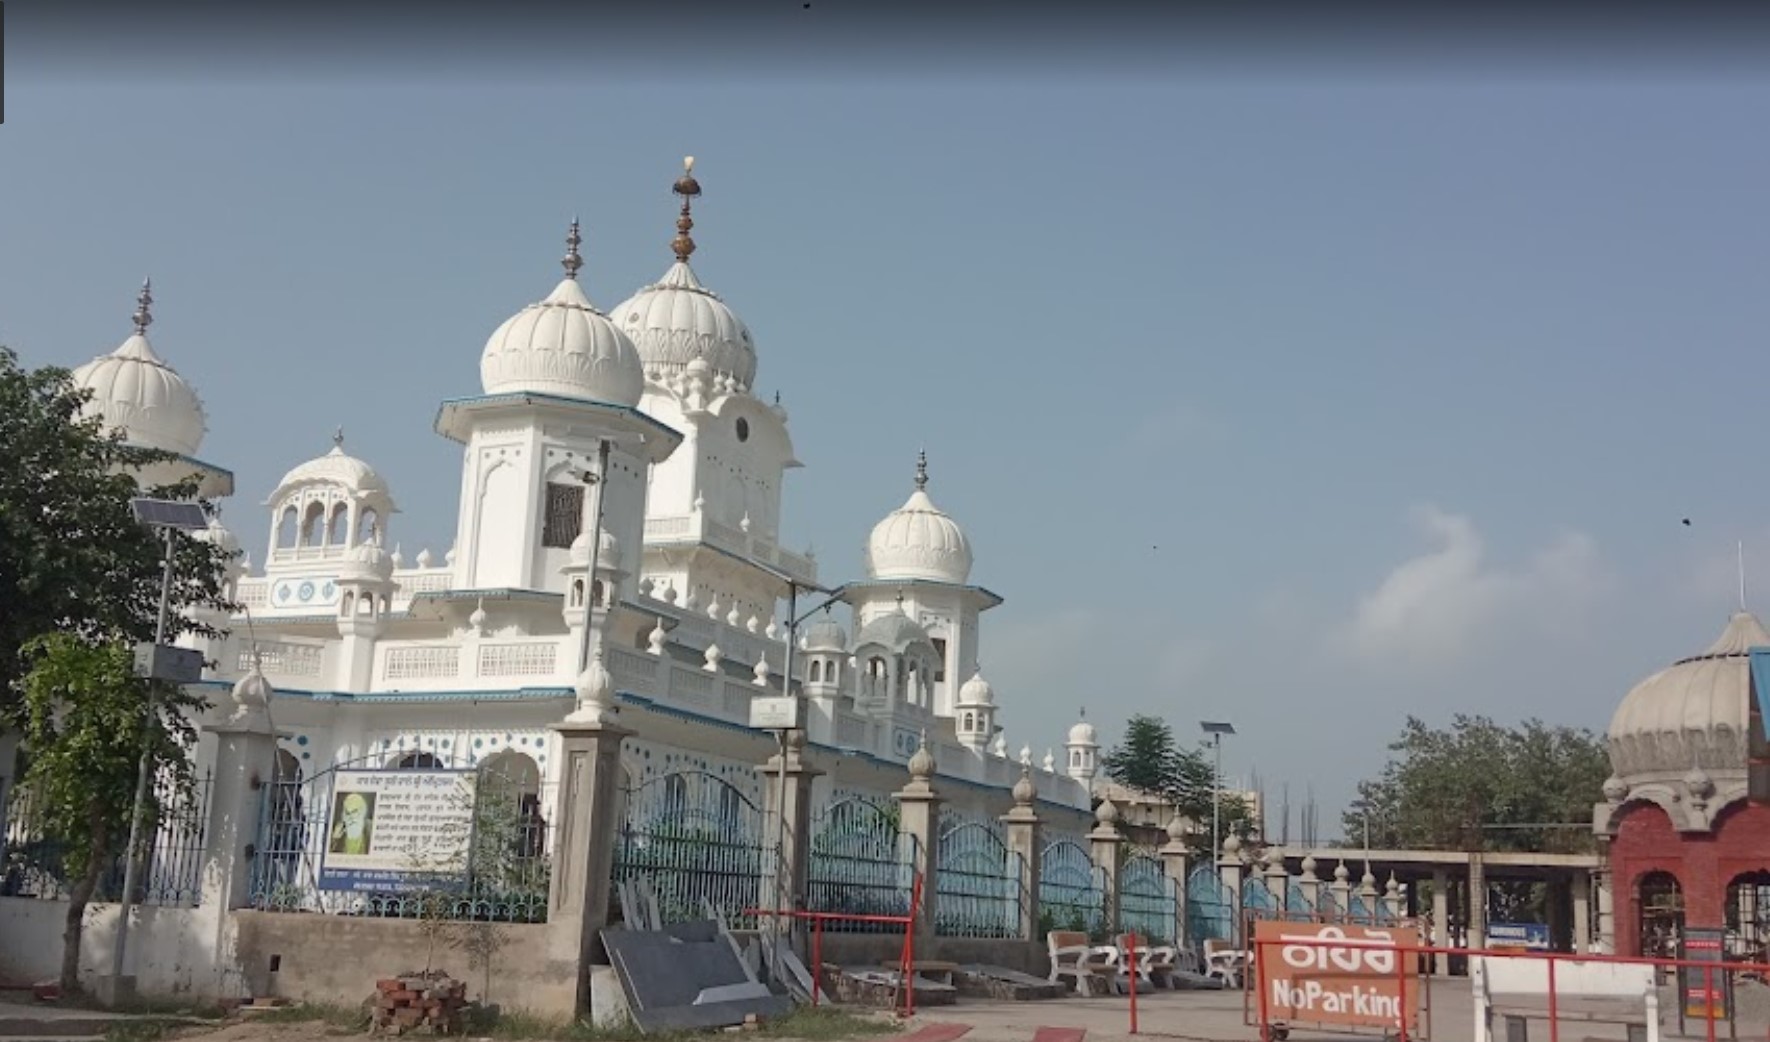 Gurudwara Sri Hatt Sahib, Sultanpur Lodhi